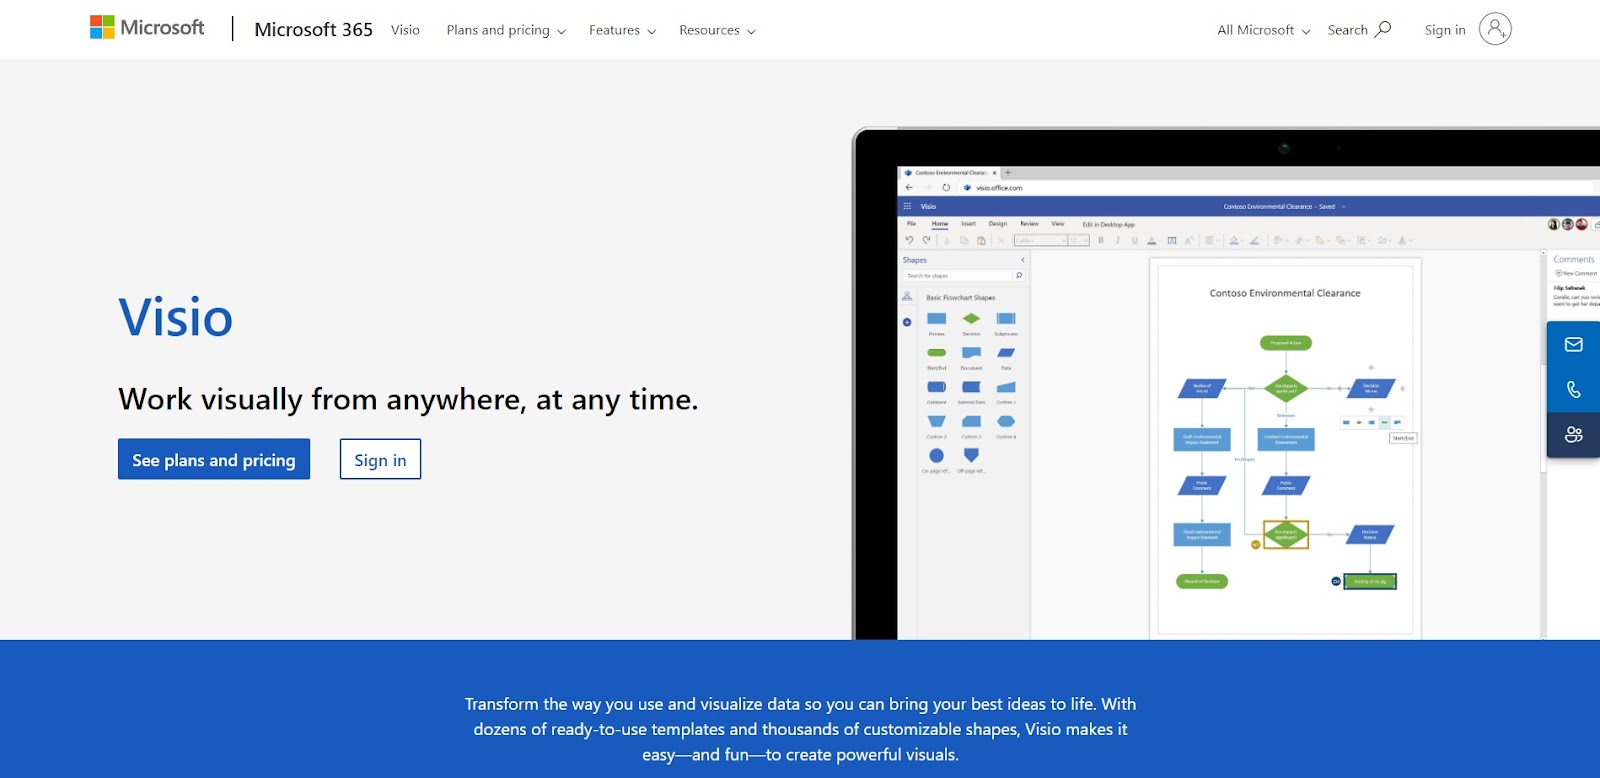 A screenshot of Microsoft Visio's website